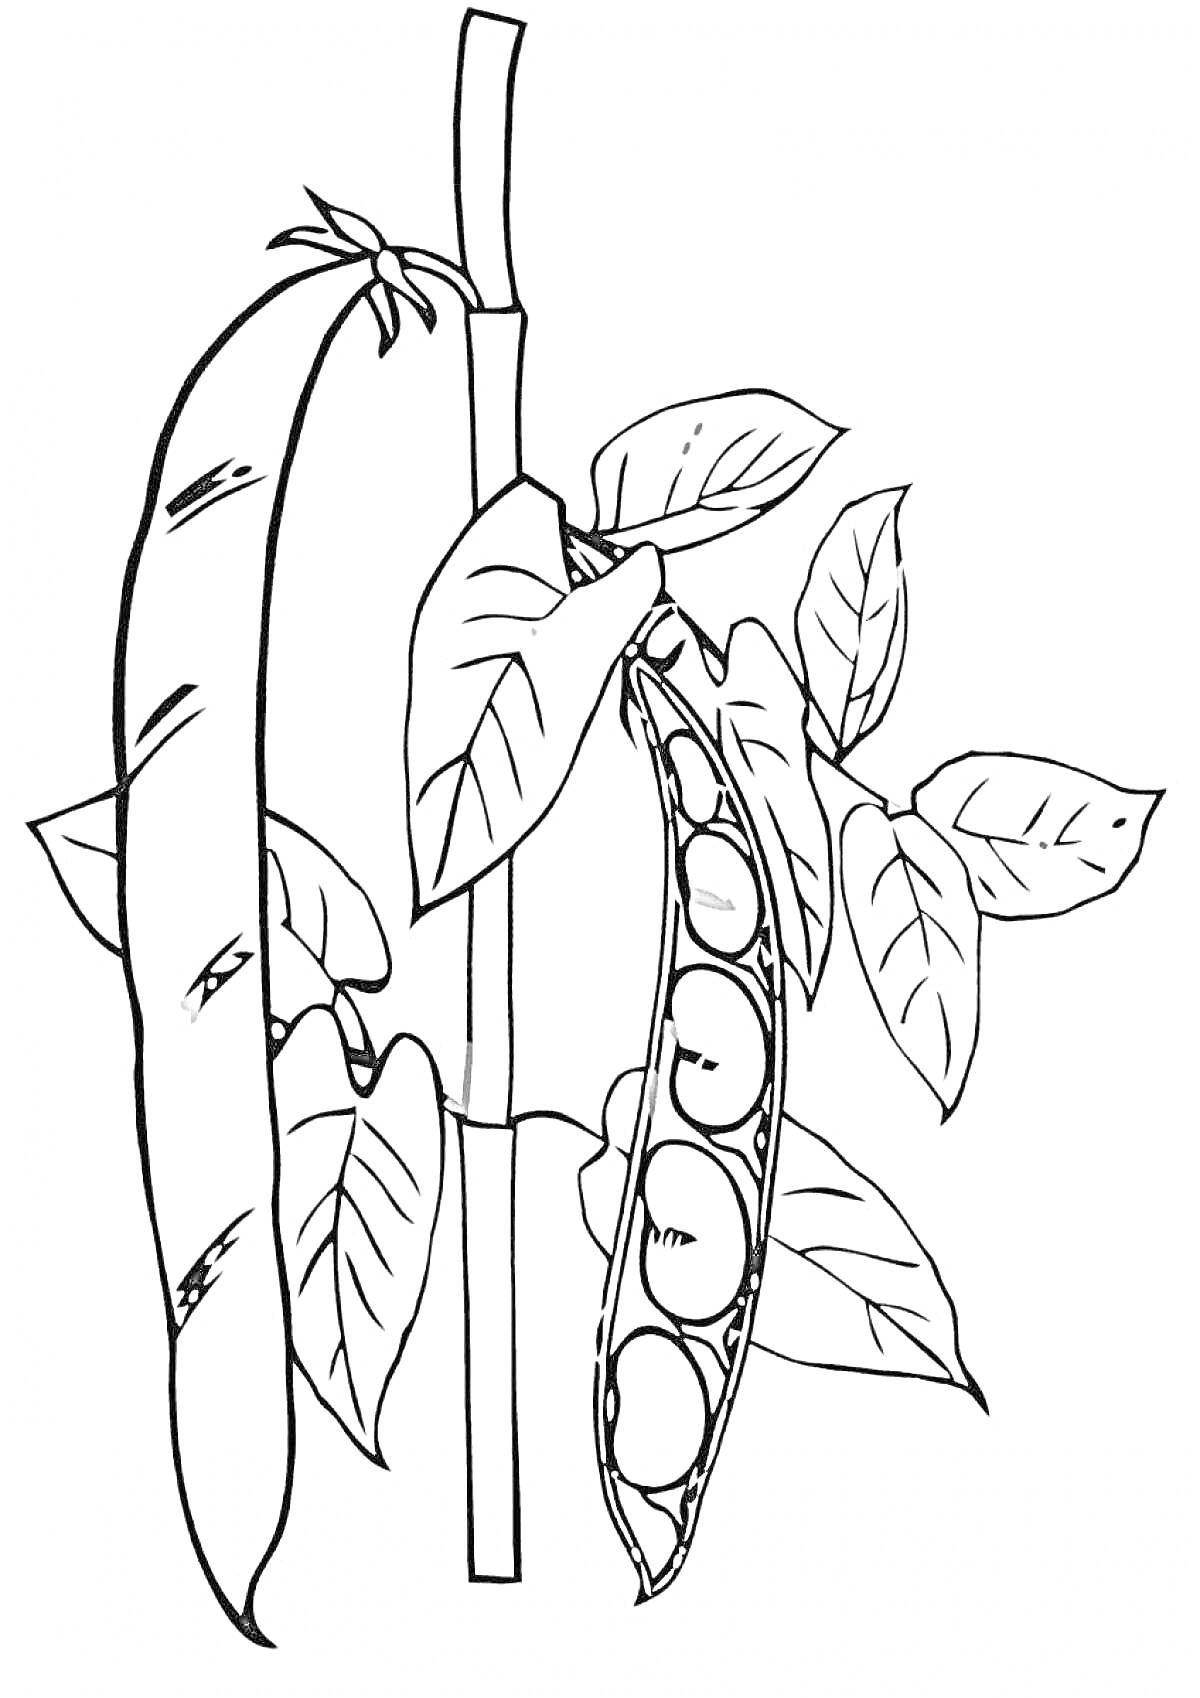 Стручки гороха на ветке с листьями